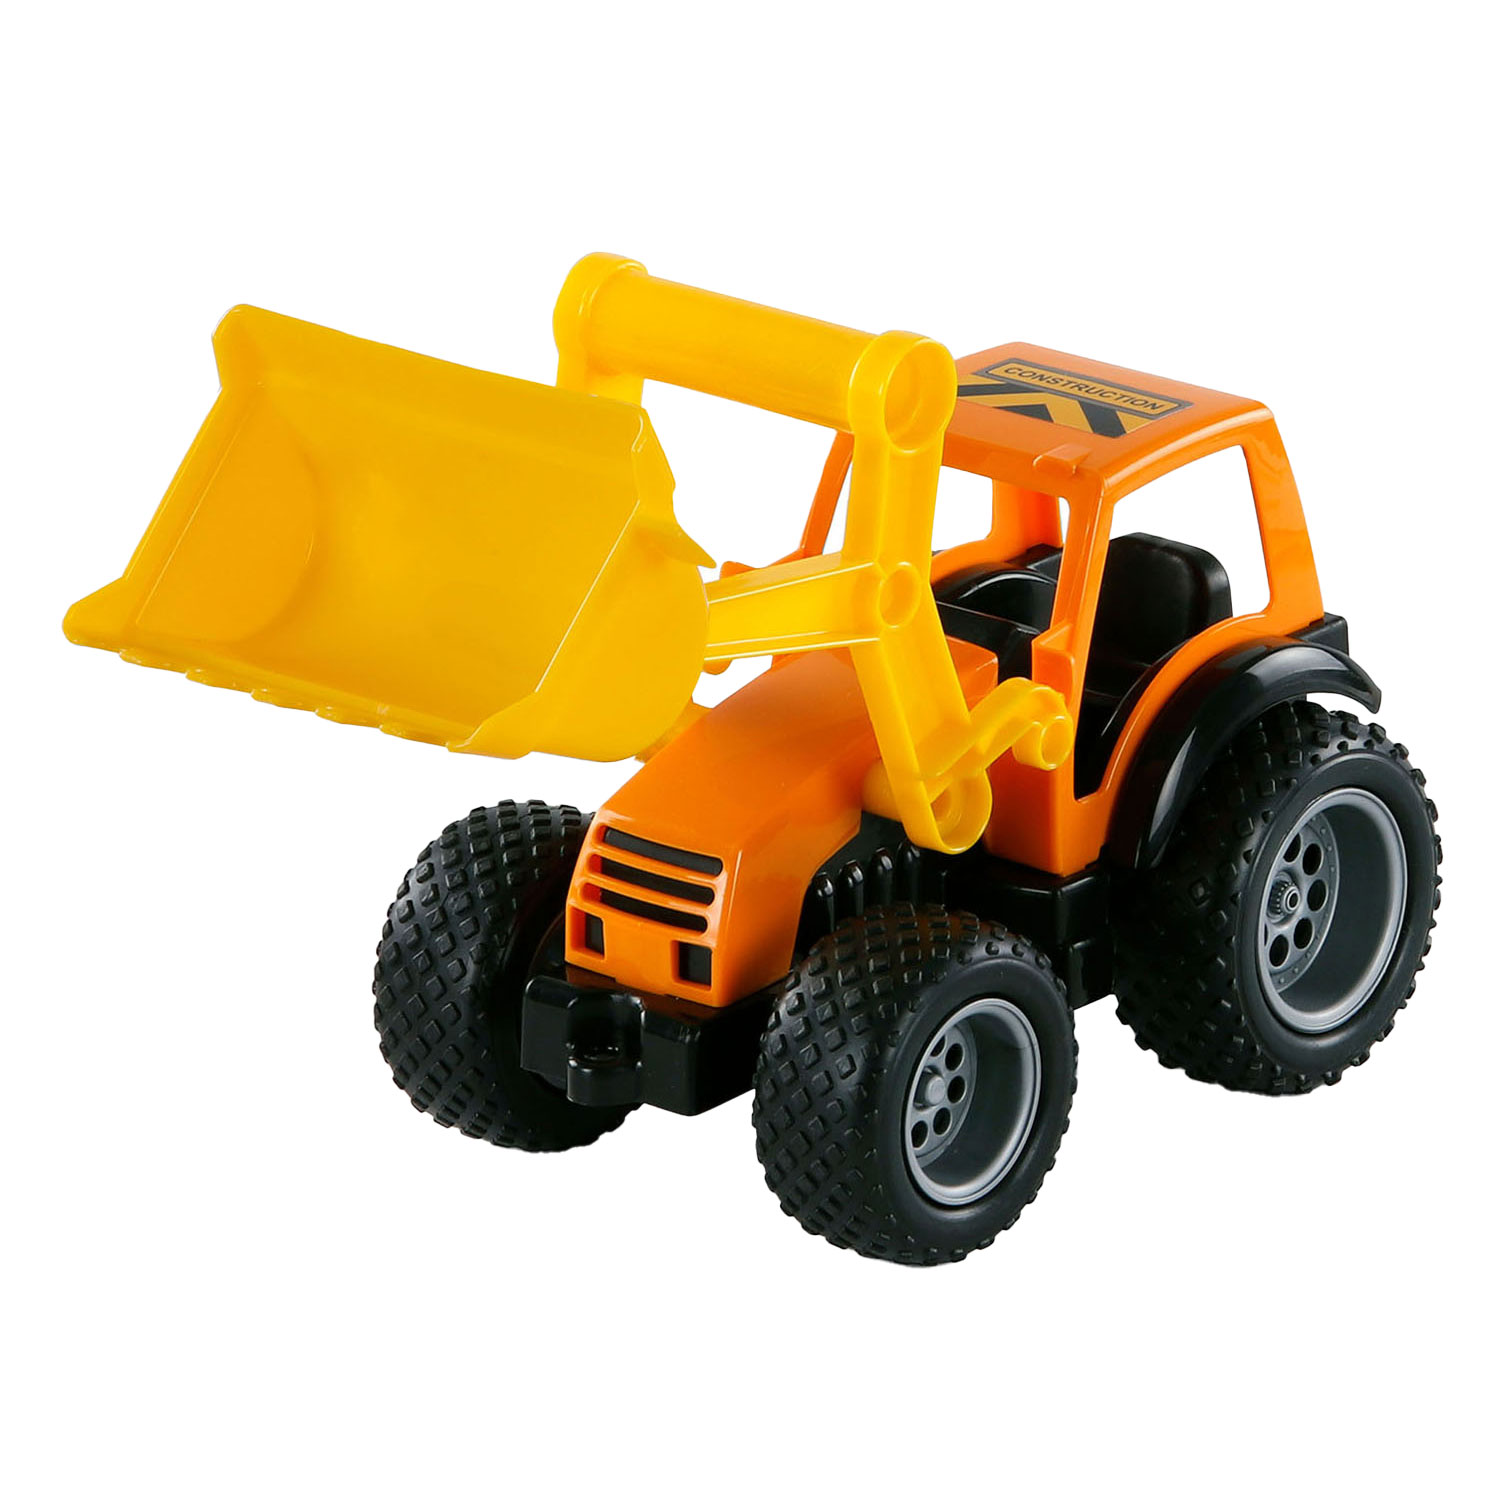 Cavallino Grip Traktor mit Gummireifen, 32 cm